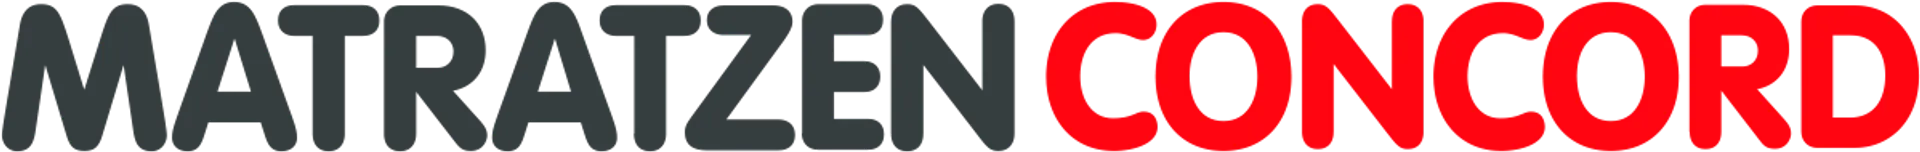 MATRATZEN CONCORD logo